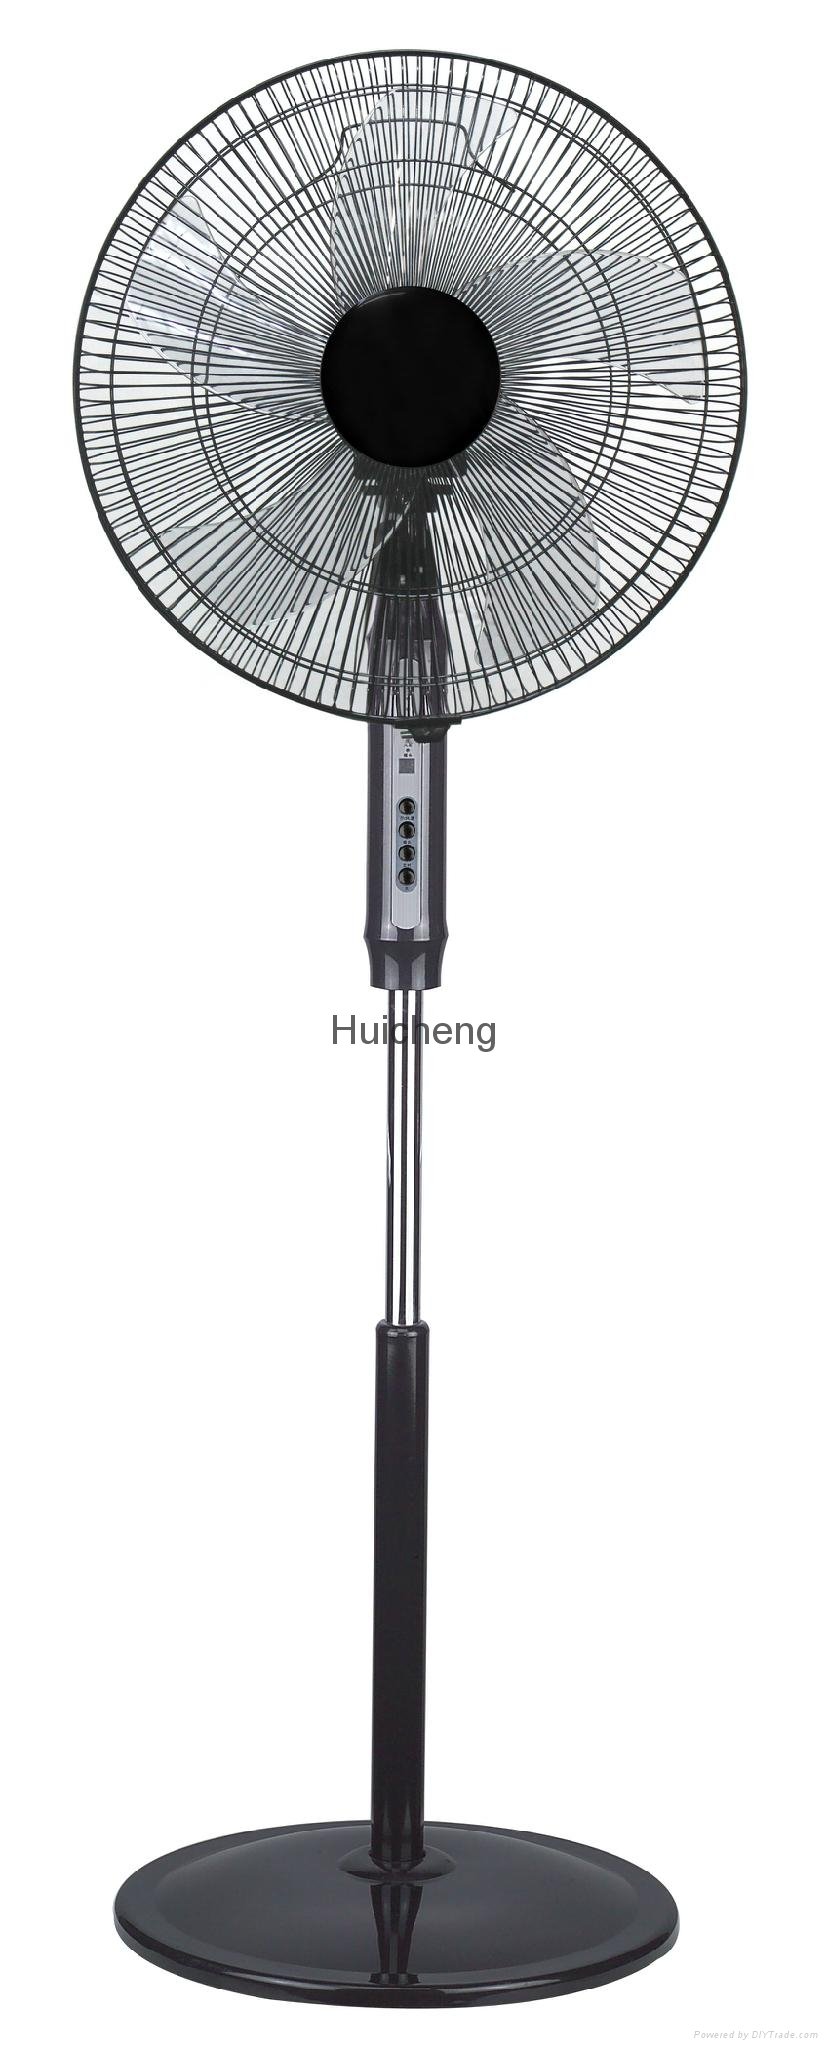 2015 New SAA standard pedestal fan / elegant design pedestal fan for Australia